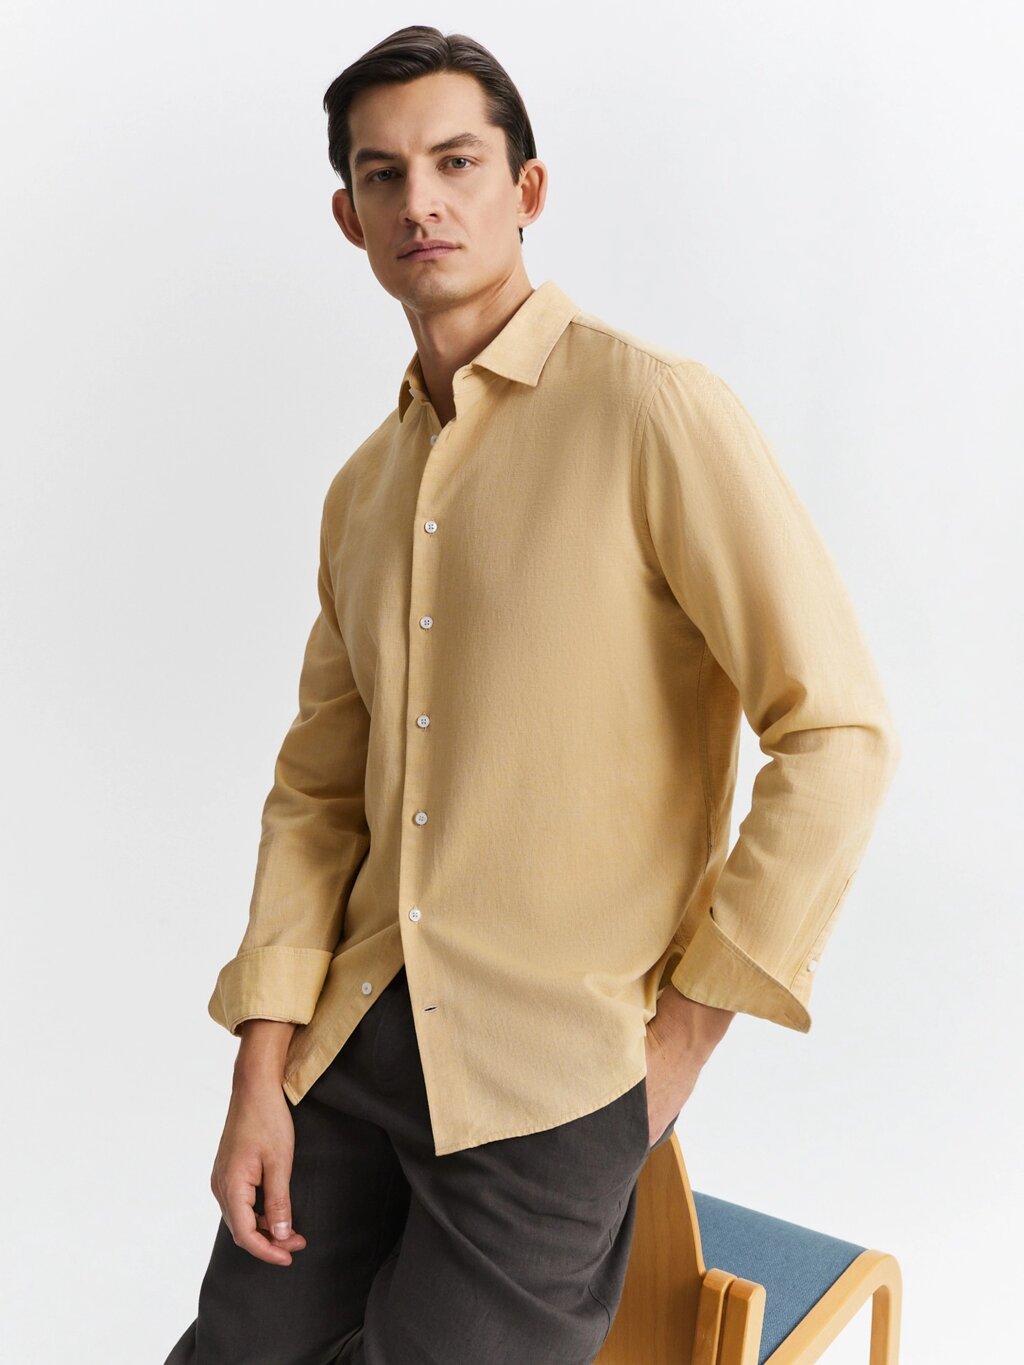 Рубашка из хлопка и льна (56) от компании Admi - фото 1